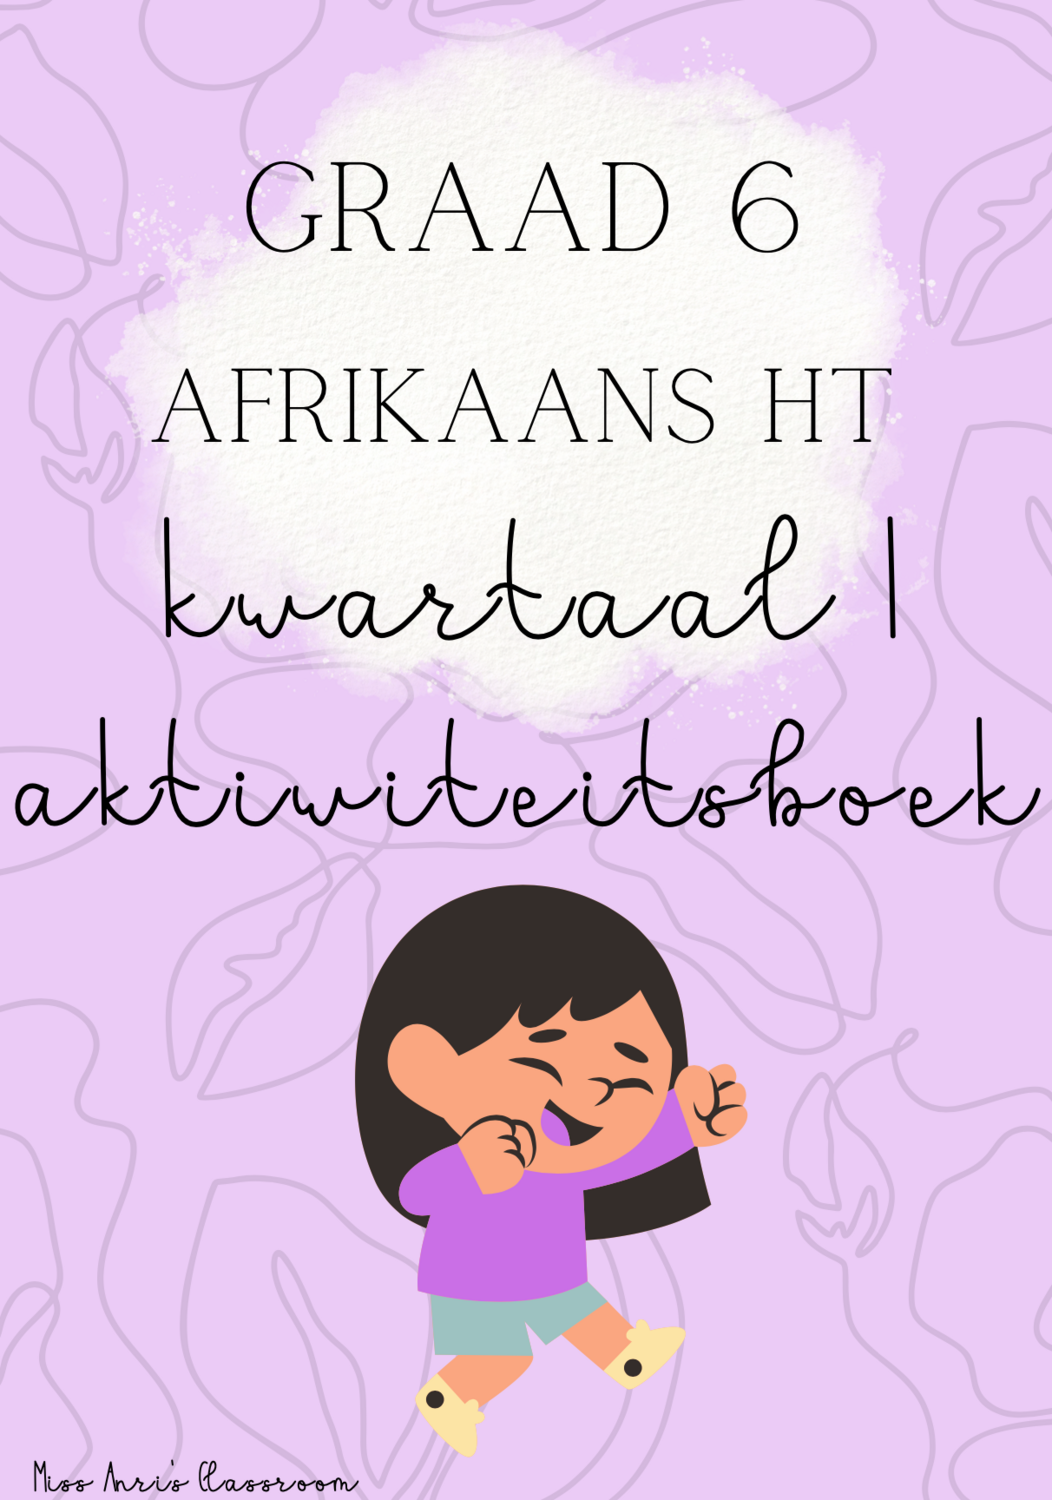 Graad 6 Afrikaans Huistaal kwartaal 1 aktiwiteitsboek (2022)